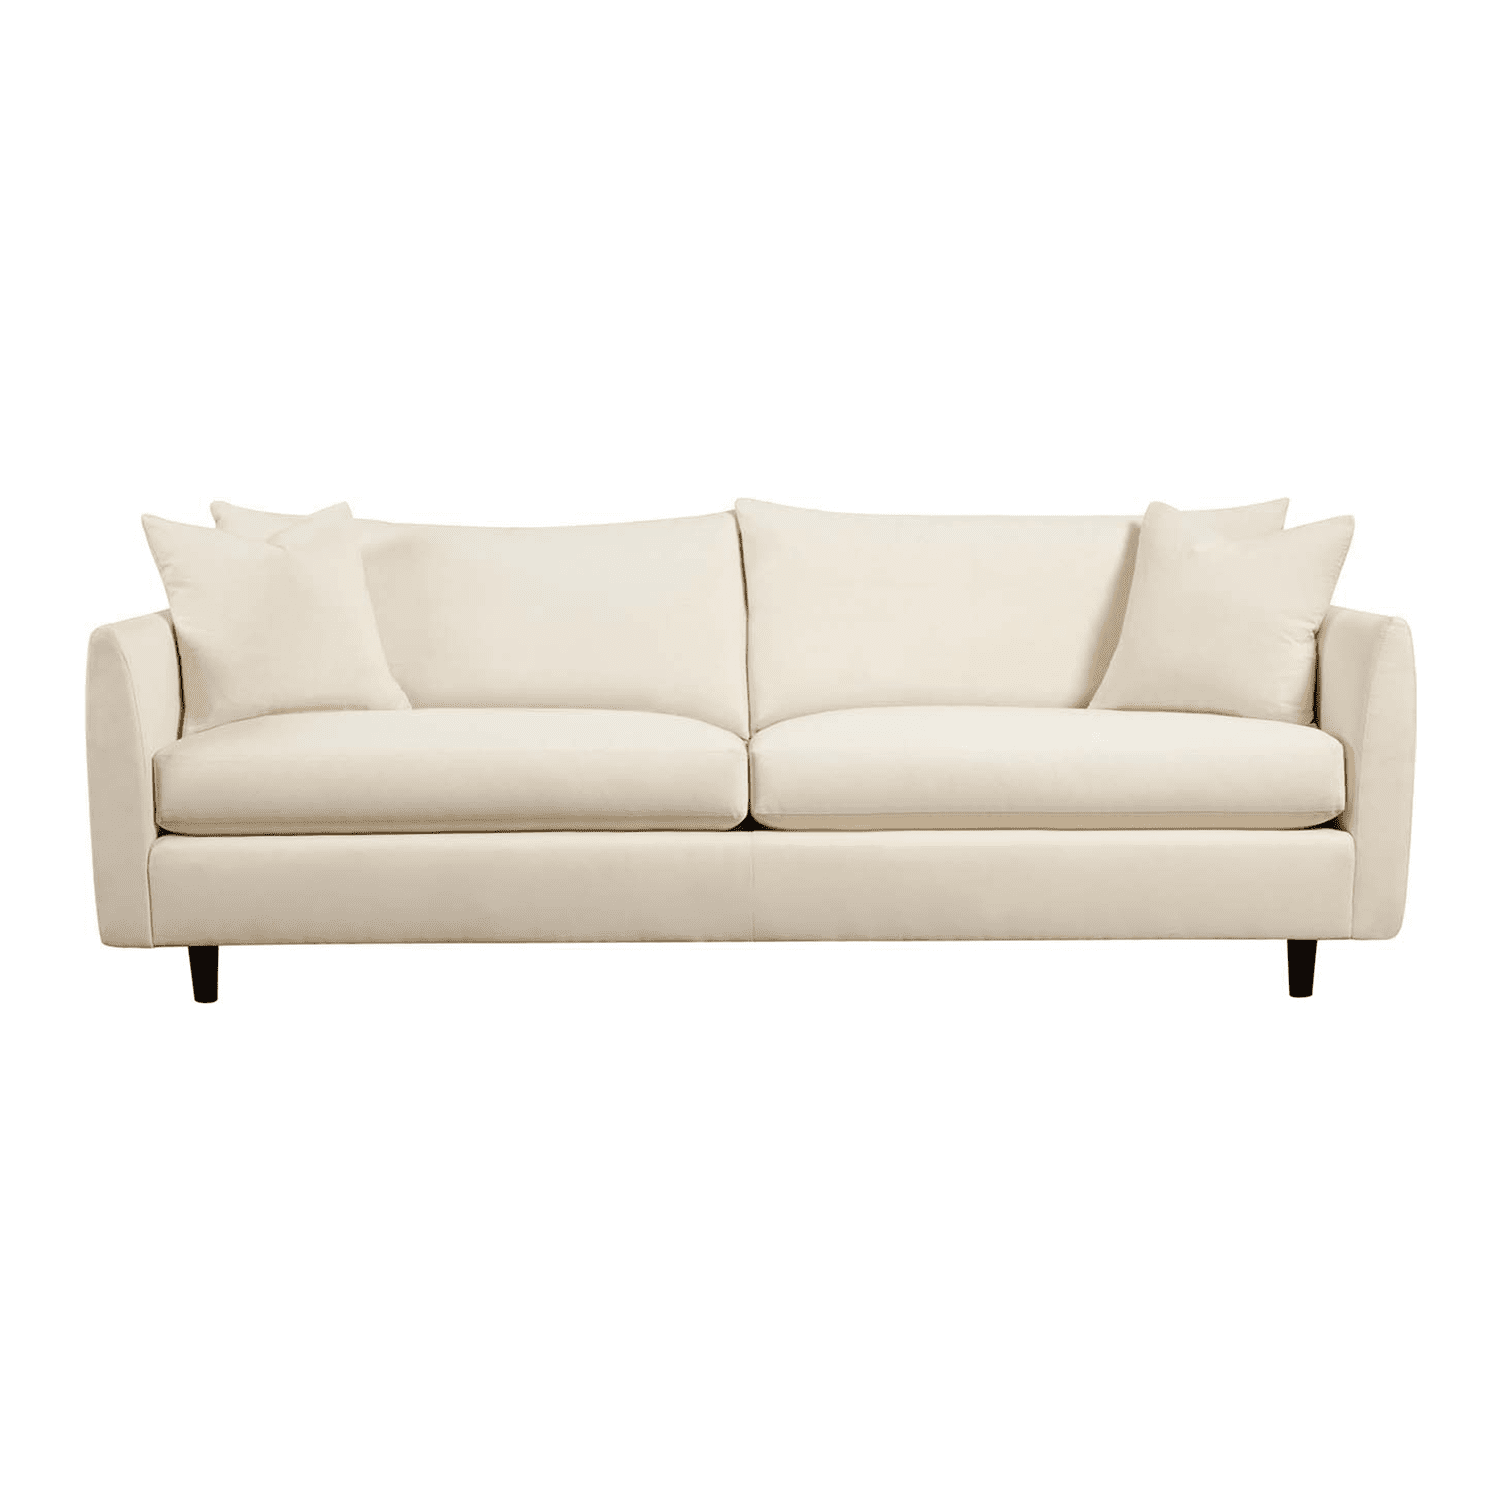 off-white upholstered sofa